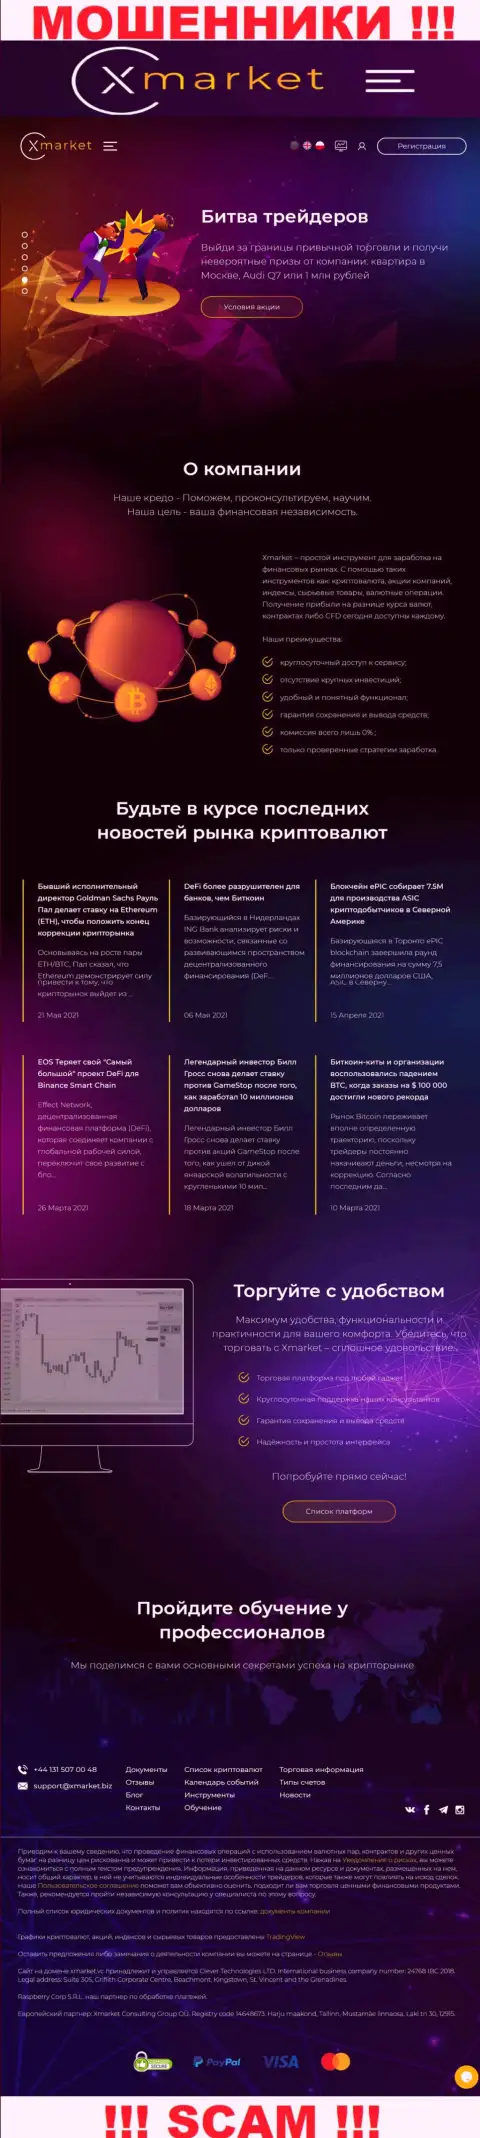 Официальный информационный портал интернет-мошенников и аферистов компании Х Маркет